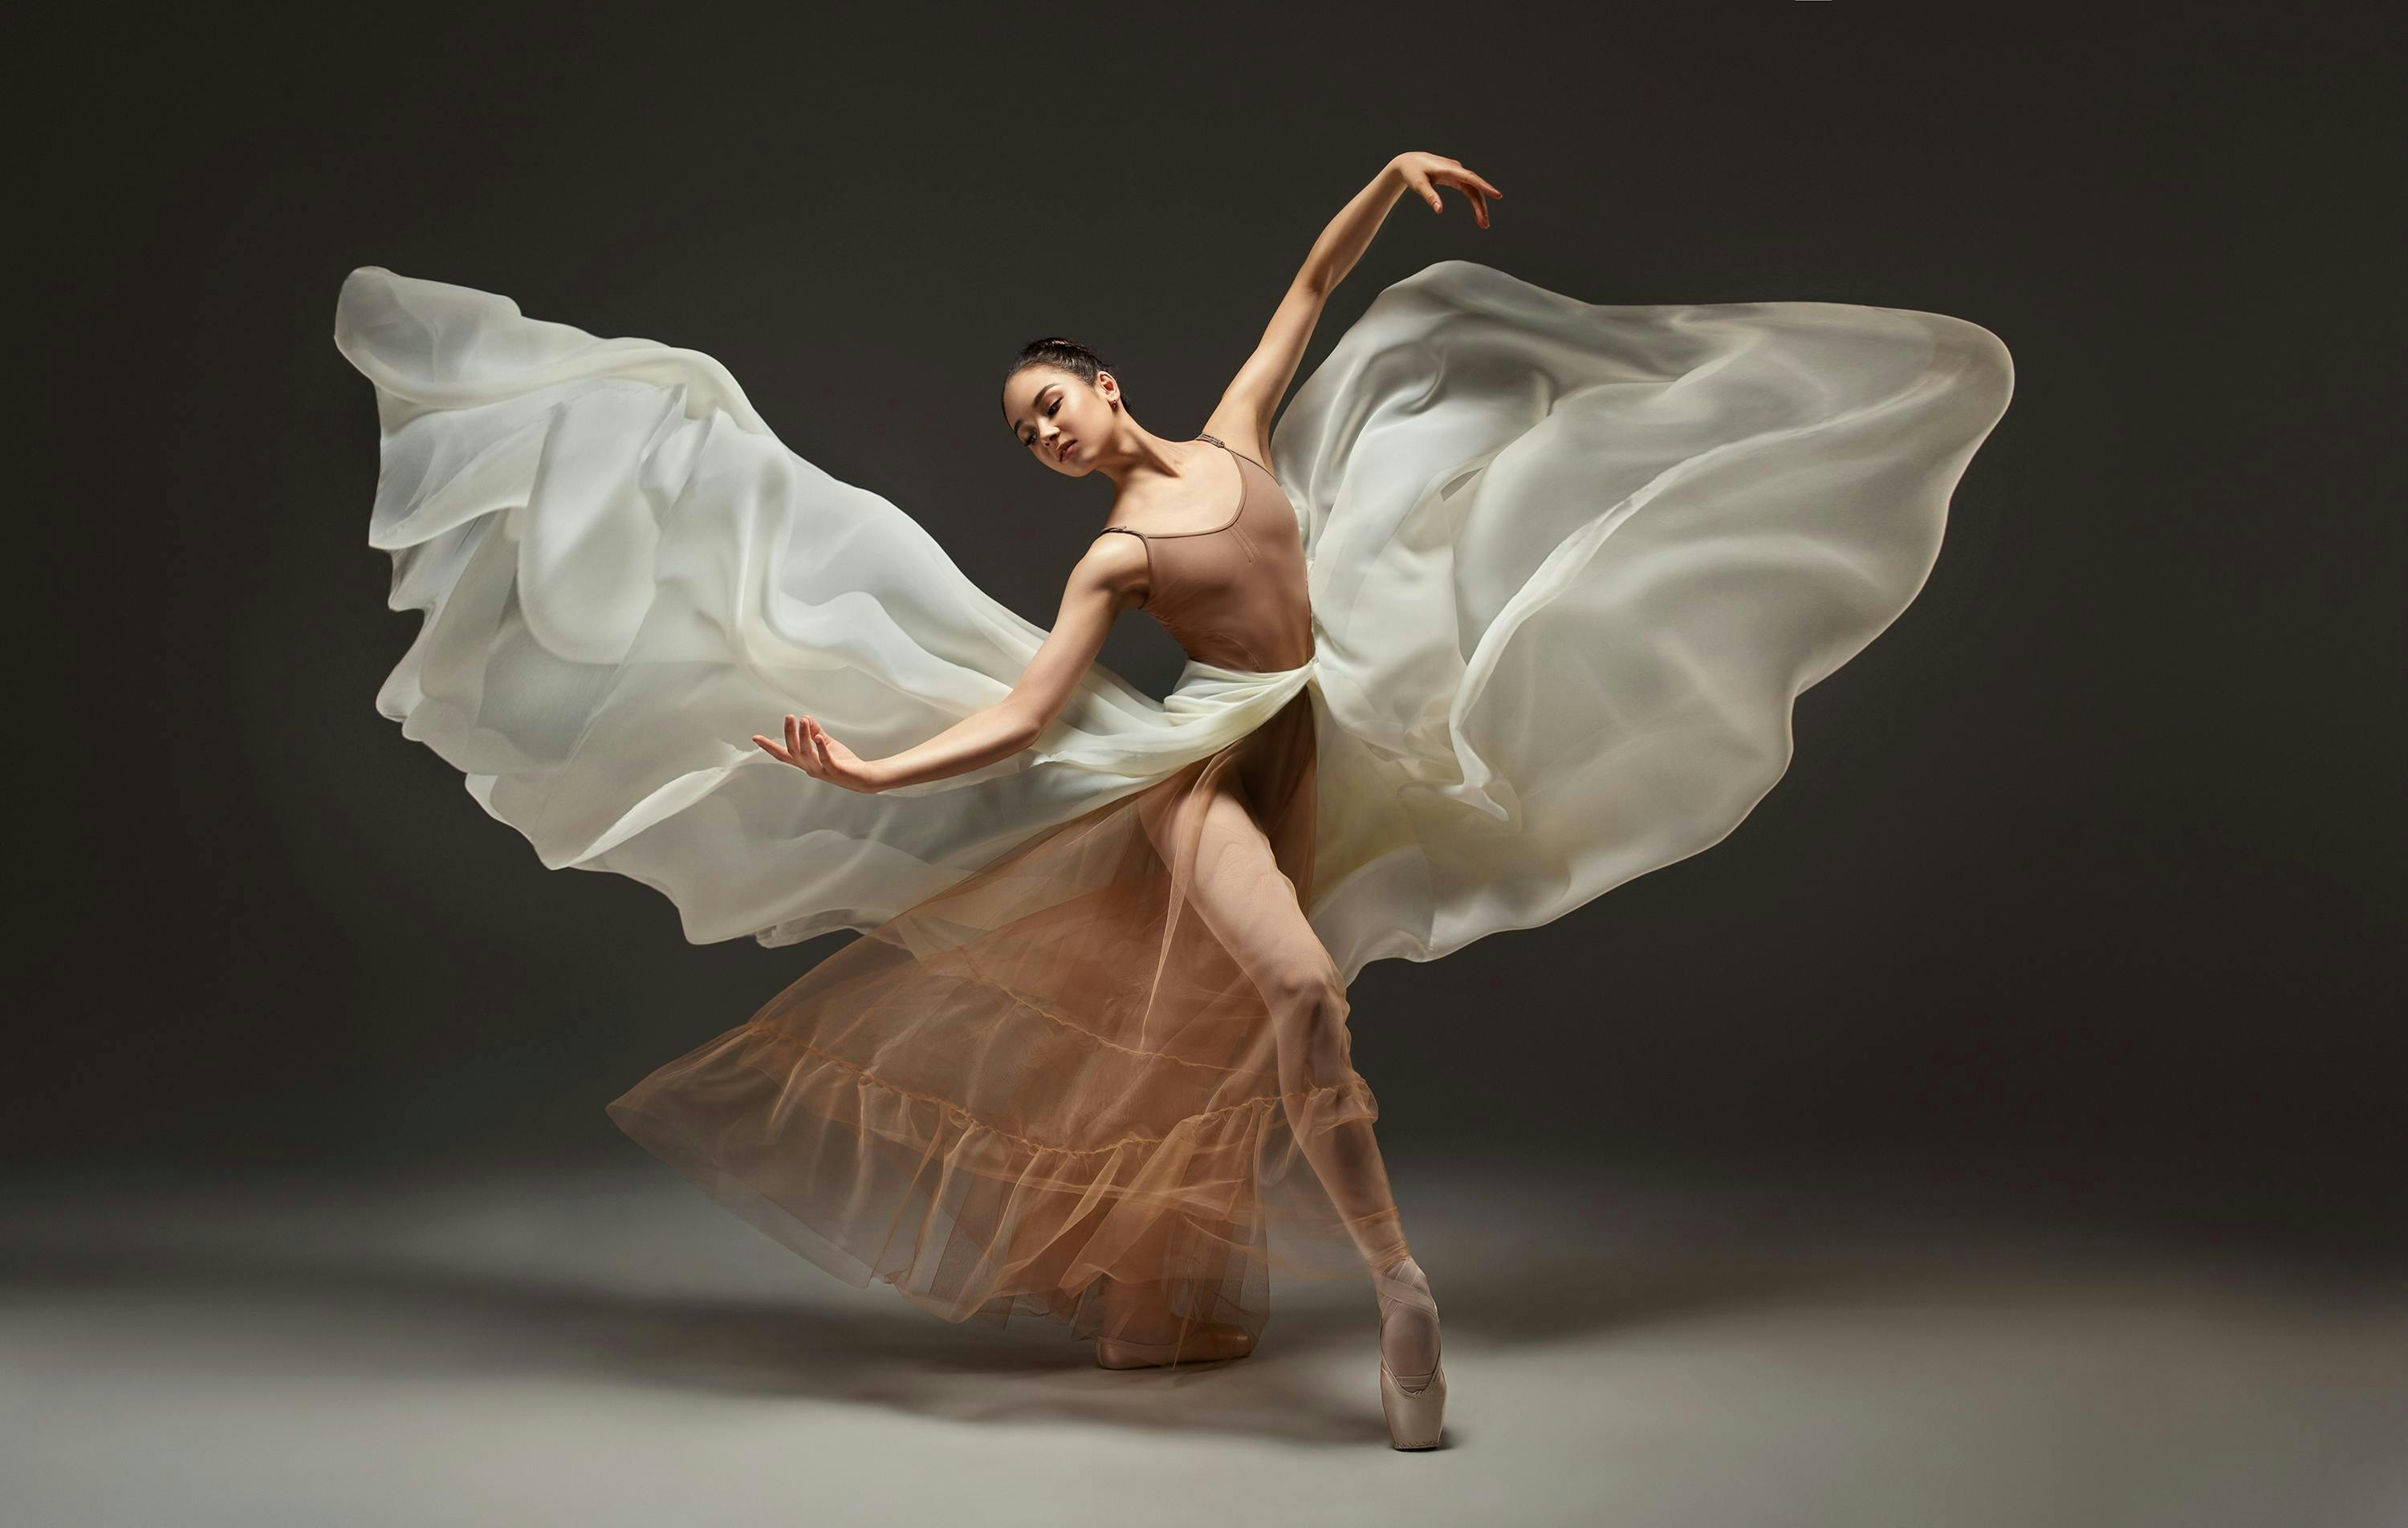 studio,dress,beauty,concert,classic dance,graceful,dance school, dancing leisure activities person ballerina ballet adult female woman